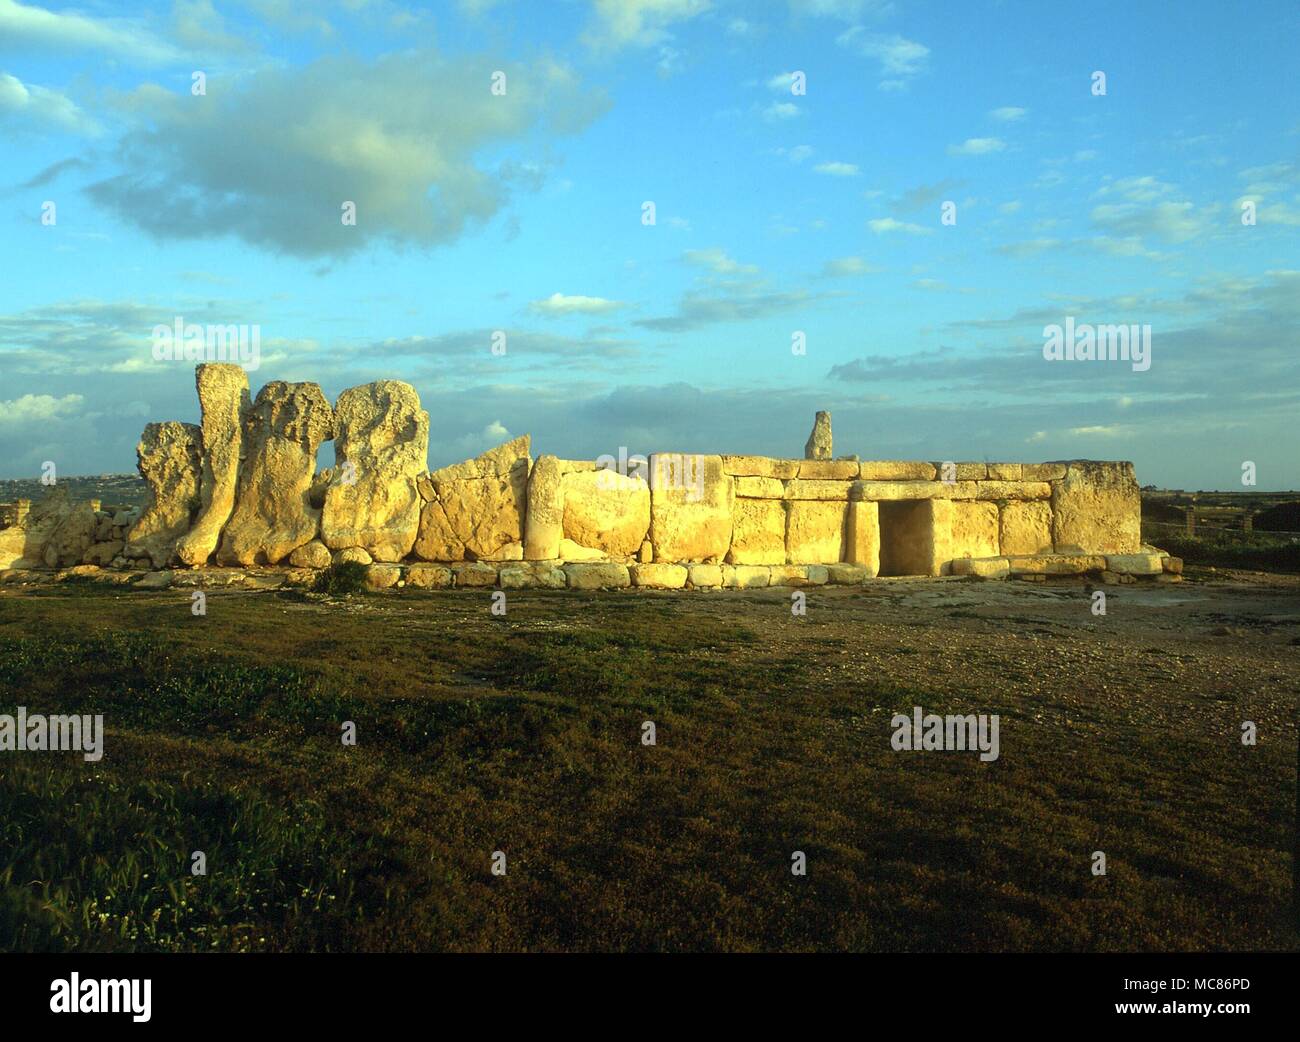 MALTA - resti preistorici - Hagar Qim i ruderi del cosiddetto "tempio" di Hagar Qim, Malta - parte di un complesso preistorico che include la più westerly "tempio" di Mnajdra. Foto Stock